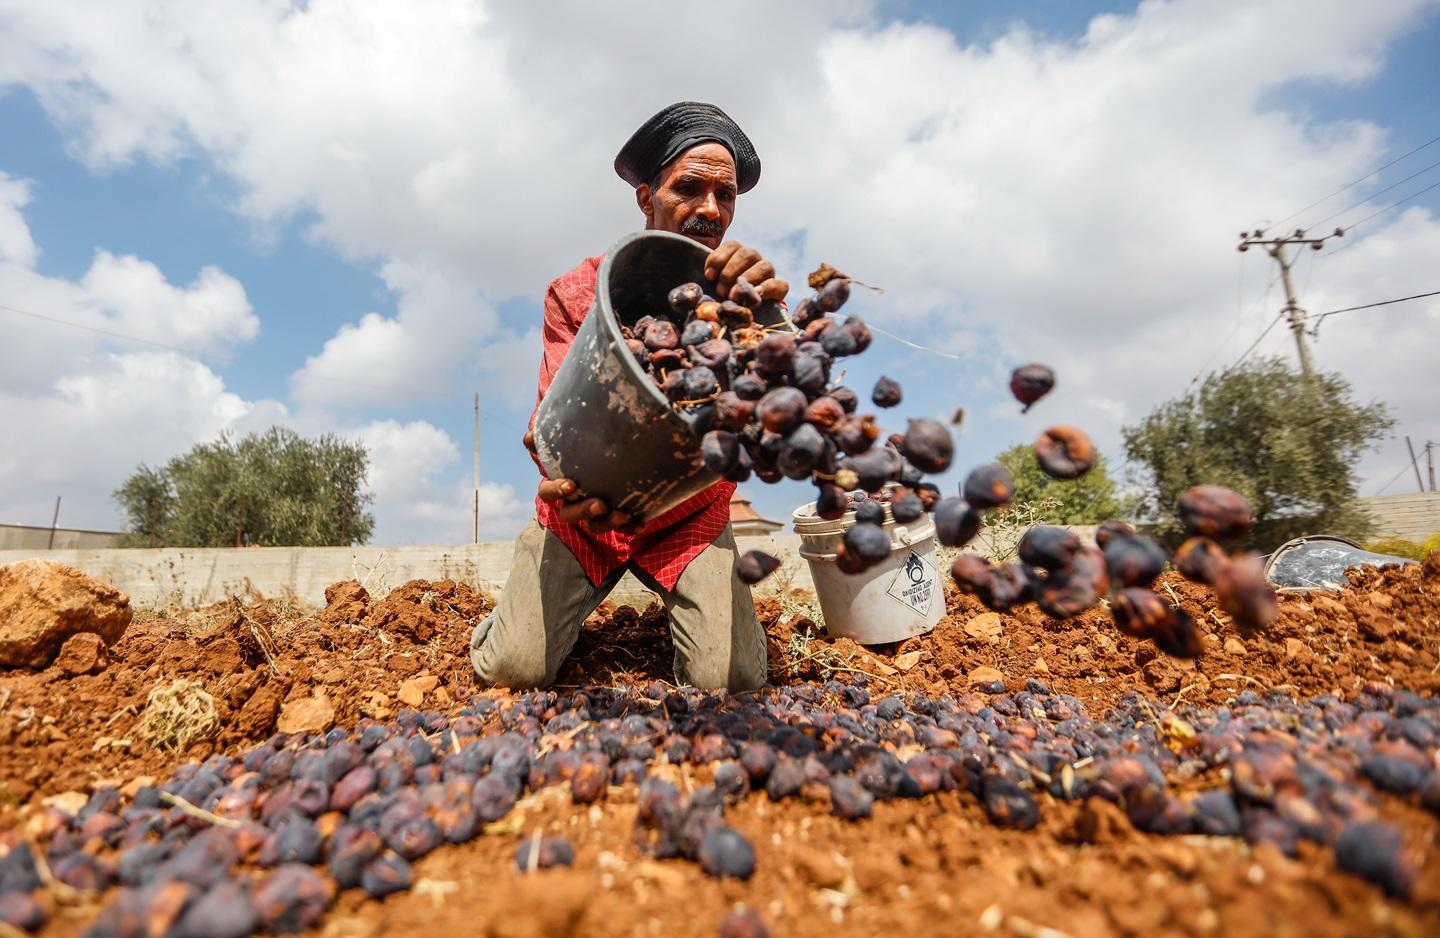 فلسطيني من بلدة سلواد يجمع ثمار التين ويجففها لصناعة "القٌطين". (بهاء نصر / وفا)